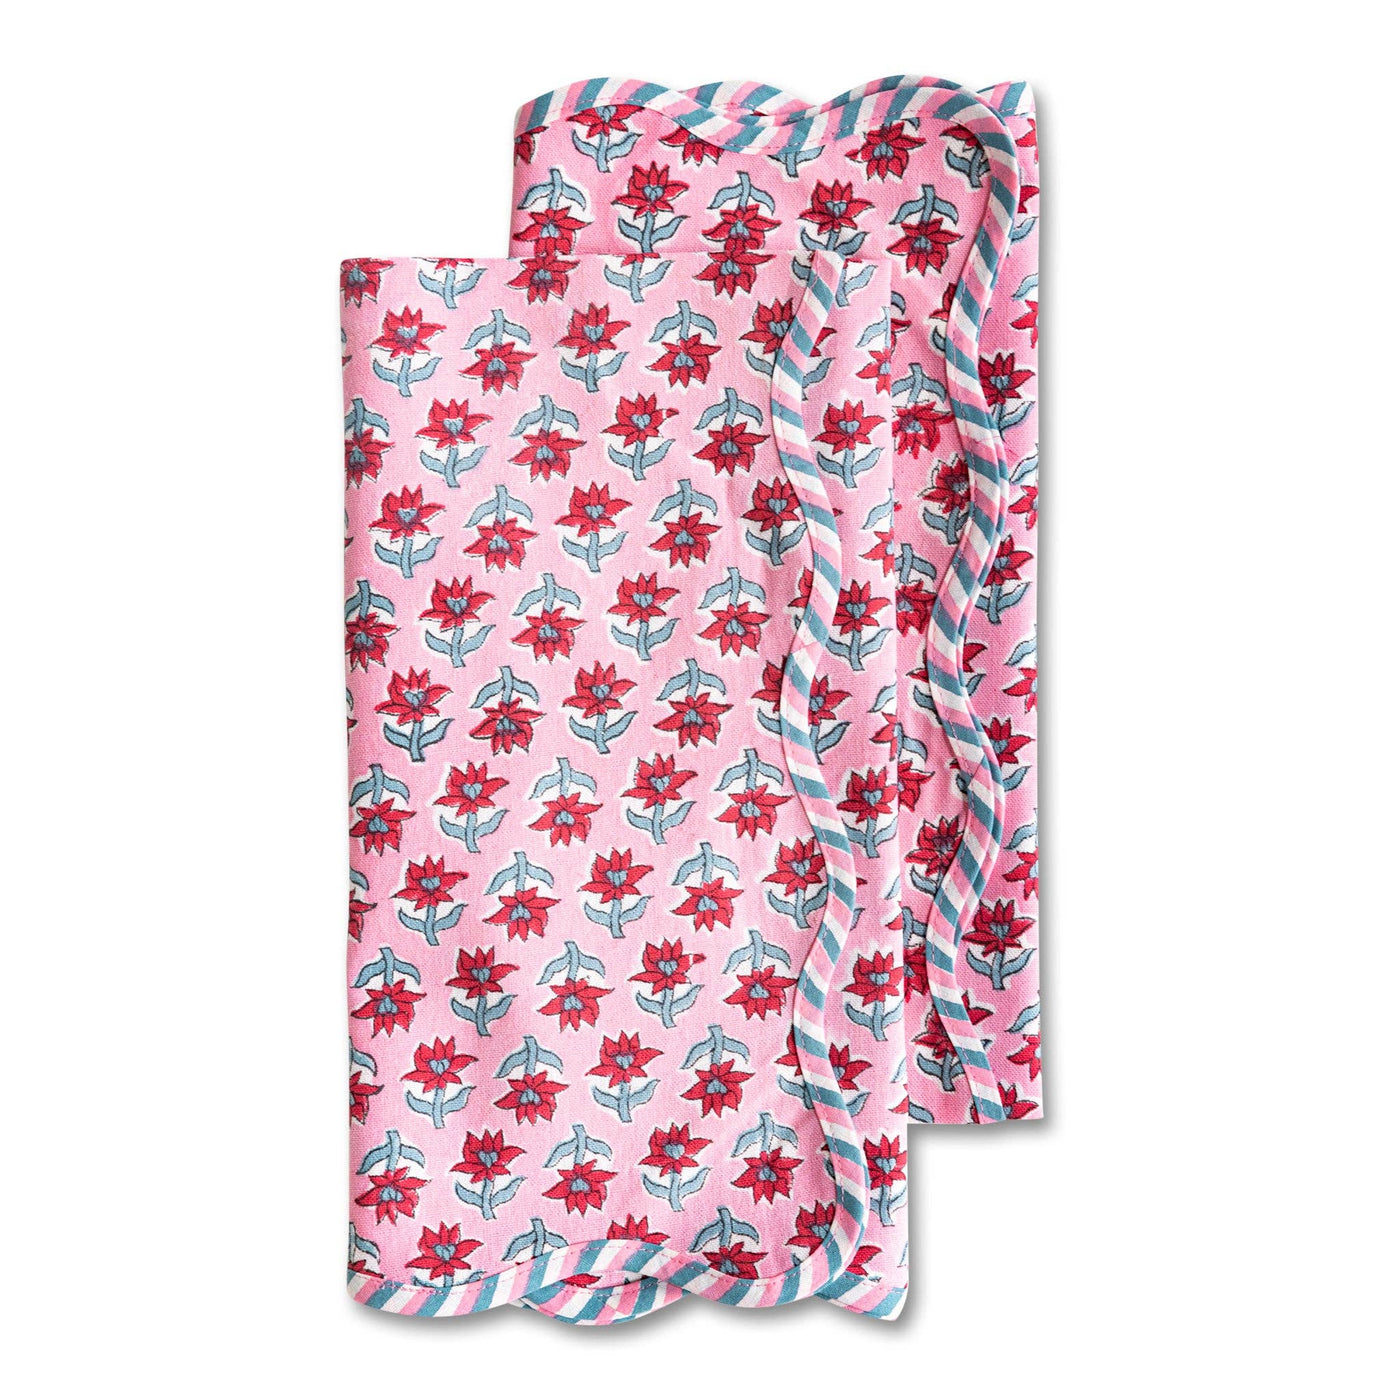 Furbish Studio - Sabrina Tea Towels S/2